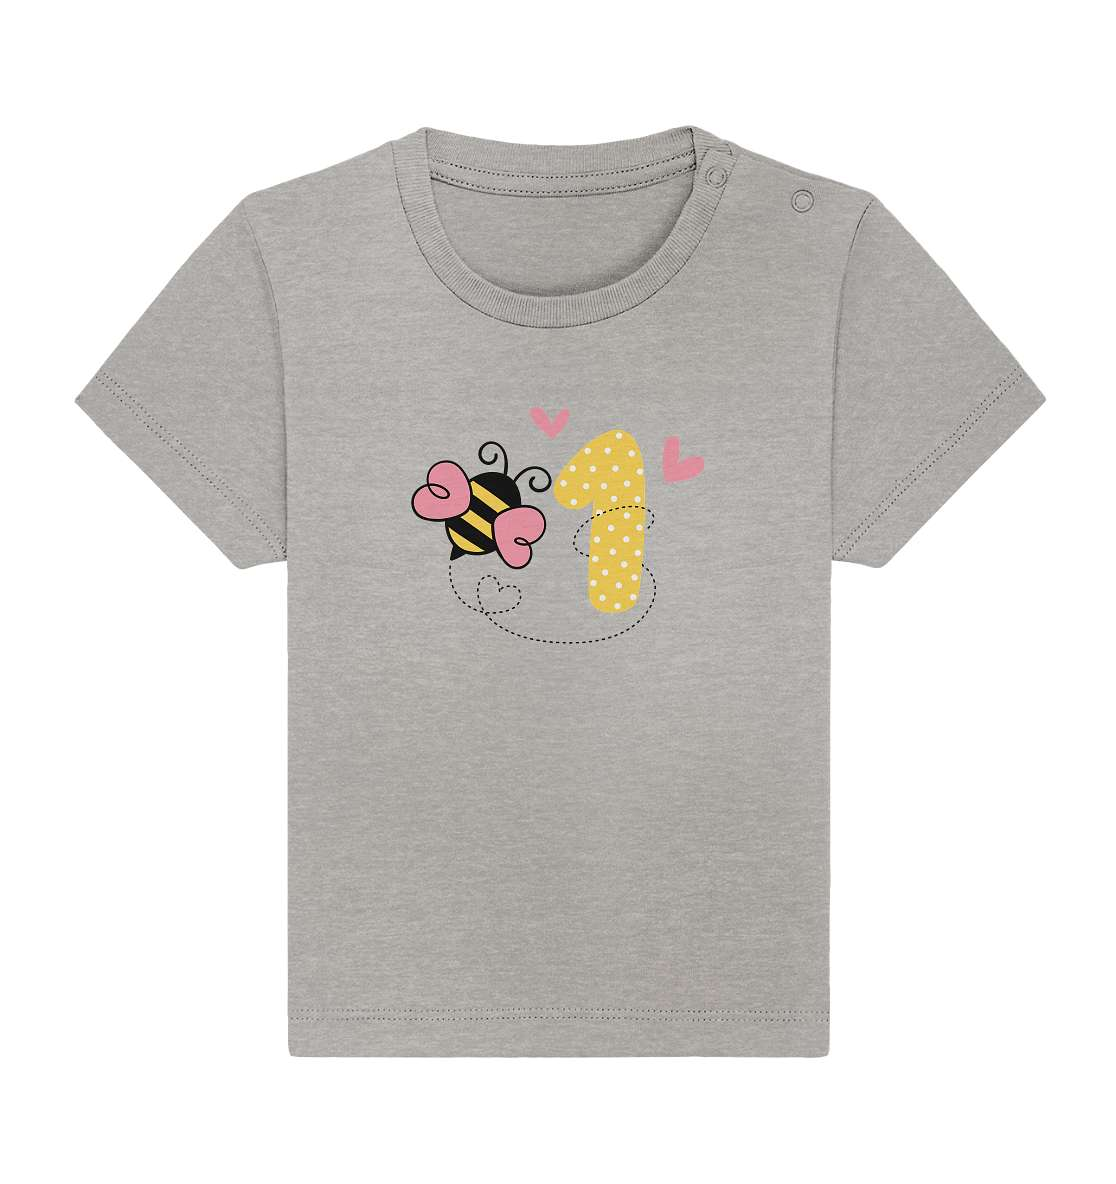 Baby erster Geburtstag - Geburtstags Geschenk - Baby Organic Shirt